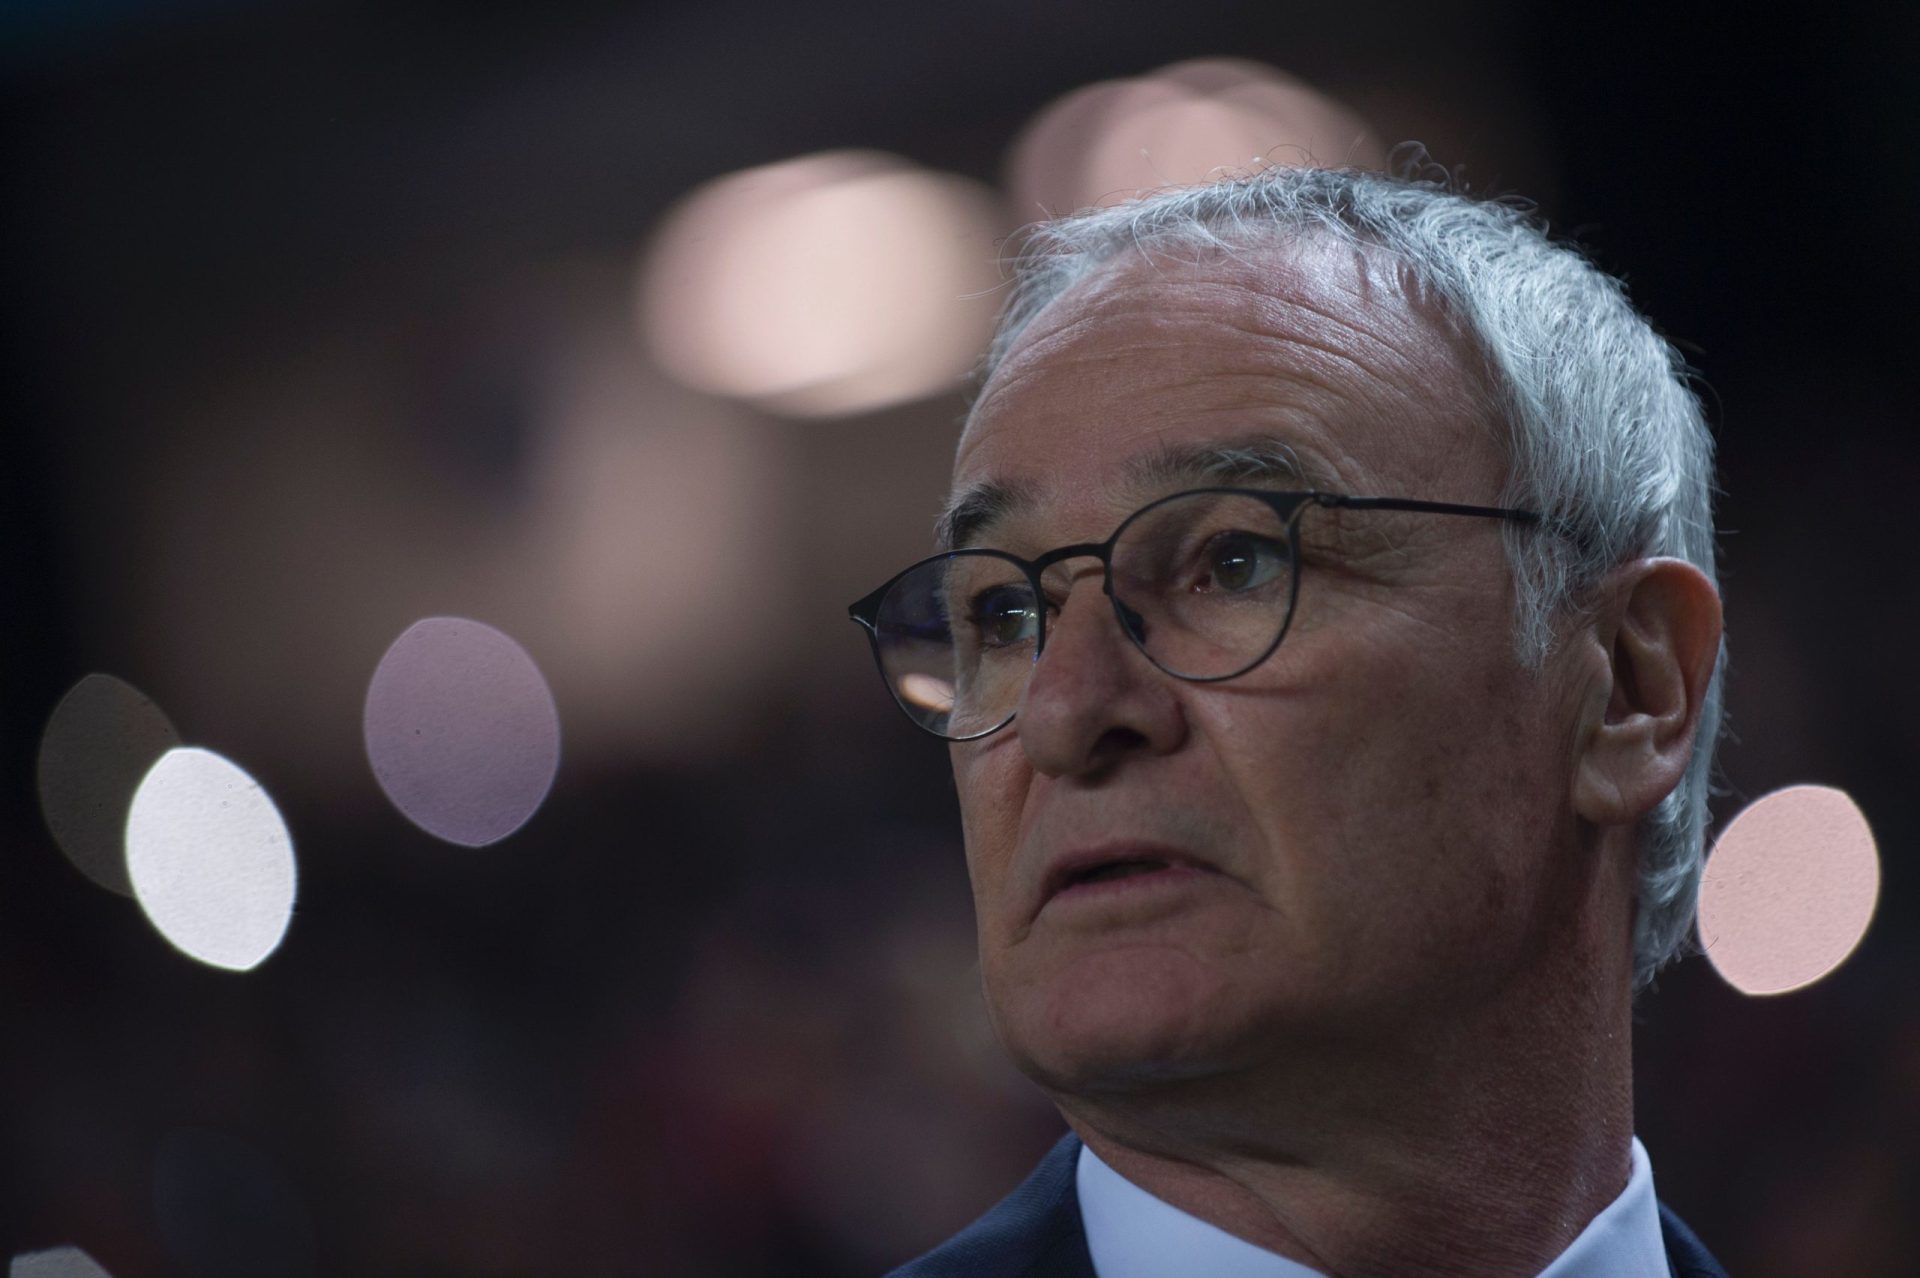 “O meu sonho morreu”, diz Ranieri